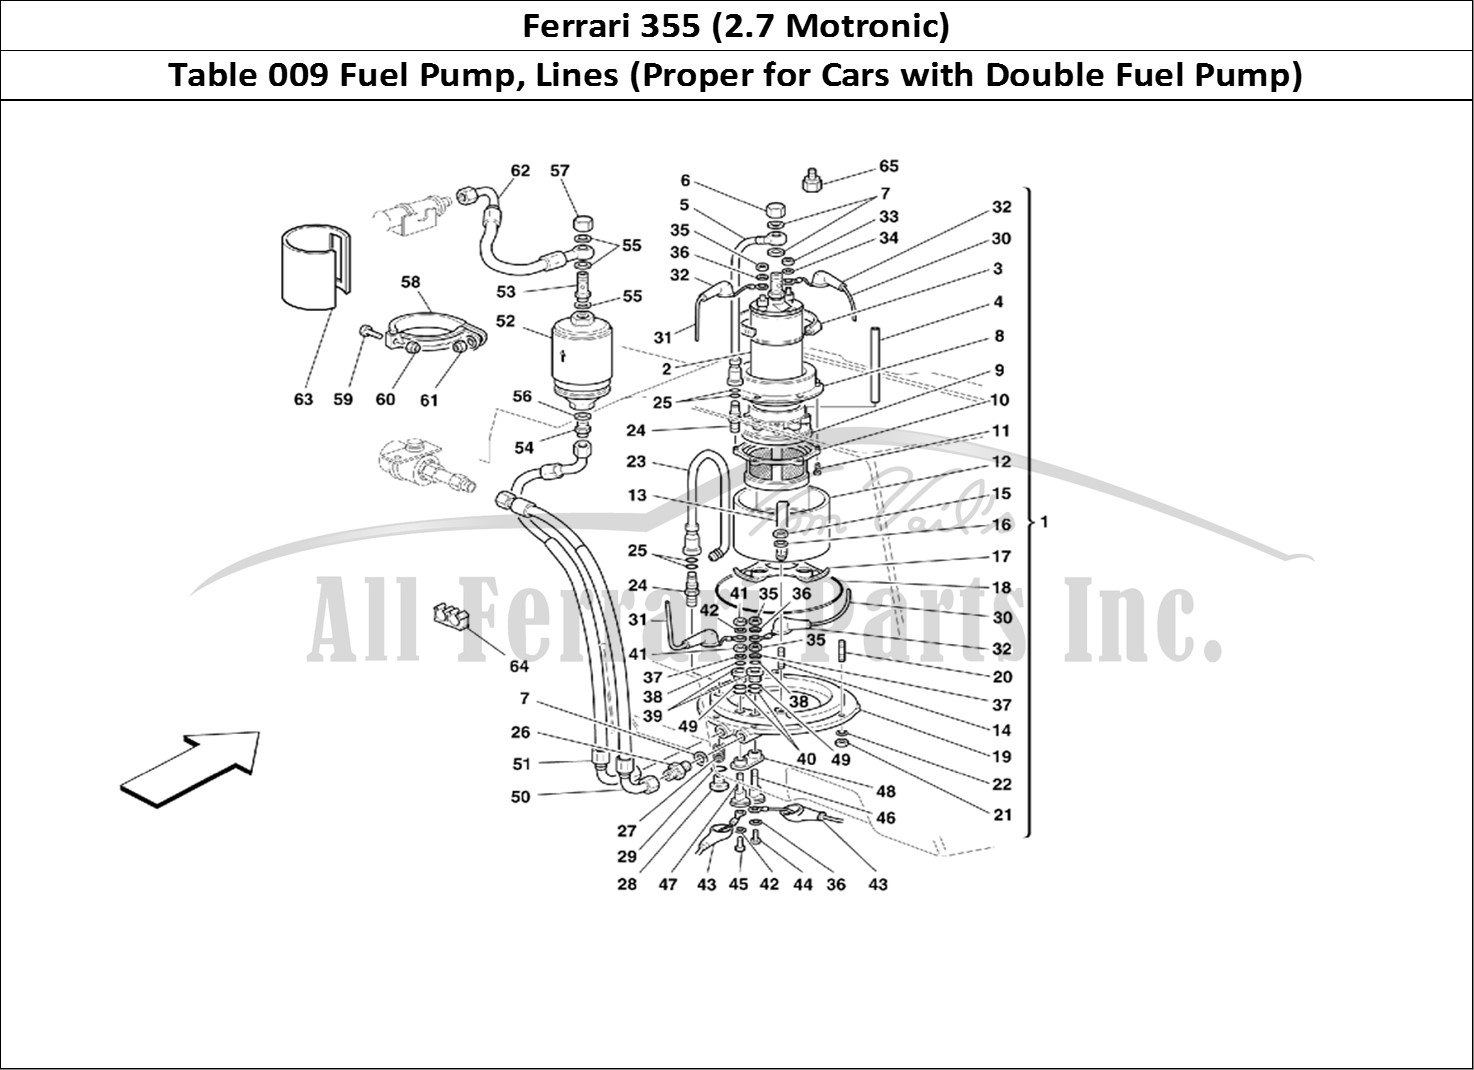 Ferrari Parts Ferrari 355 (2.7 Motronic) Page 009 Fuel Pump and Pipes -Vali